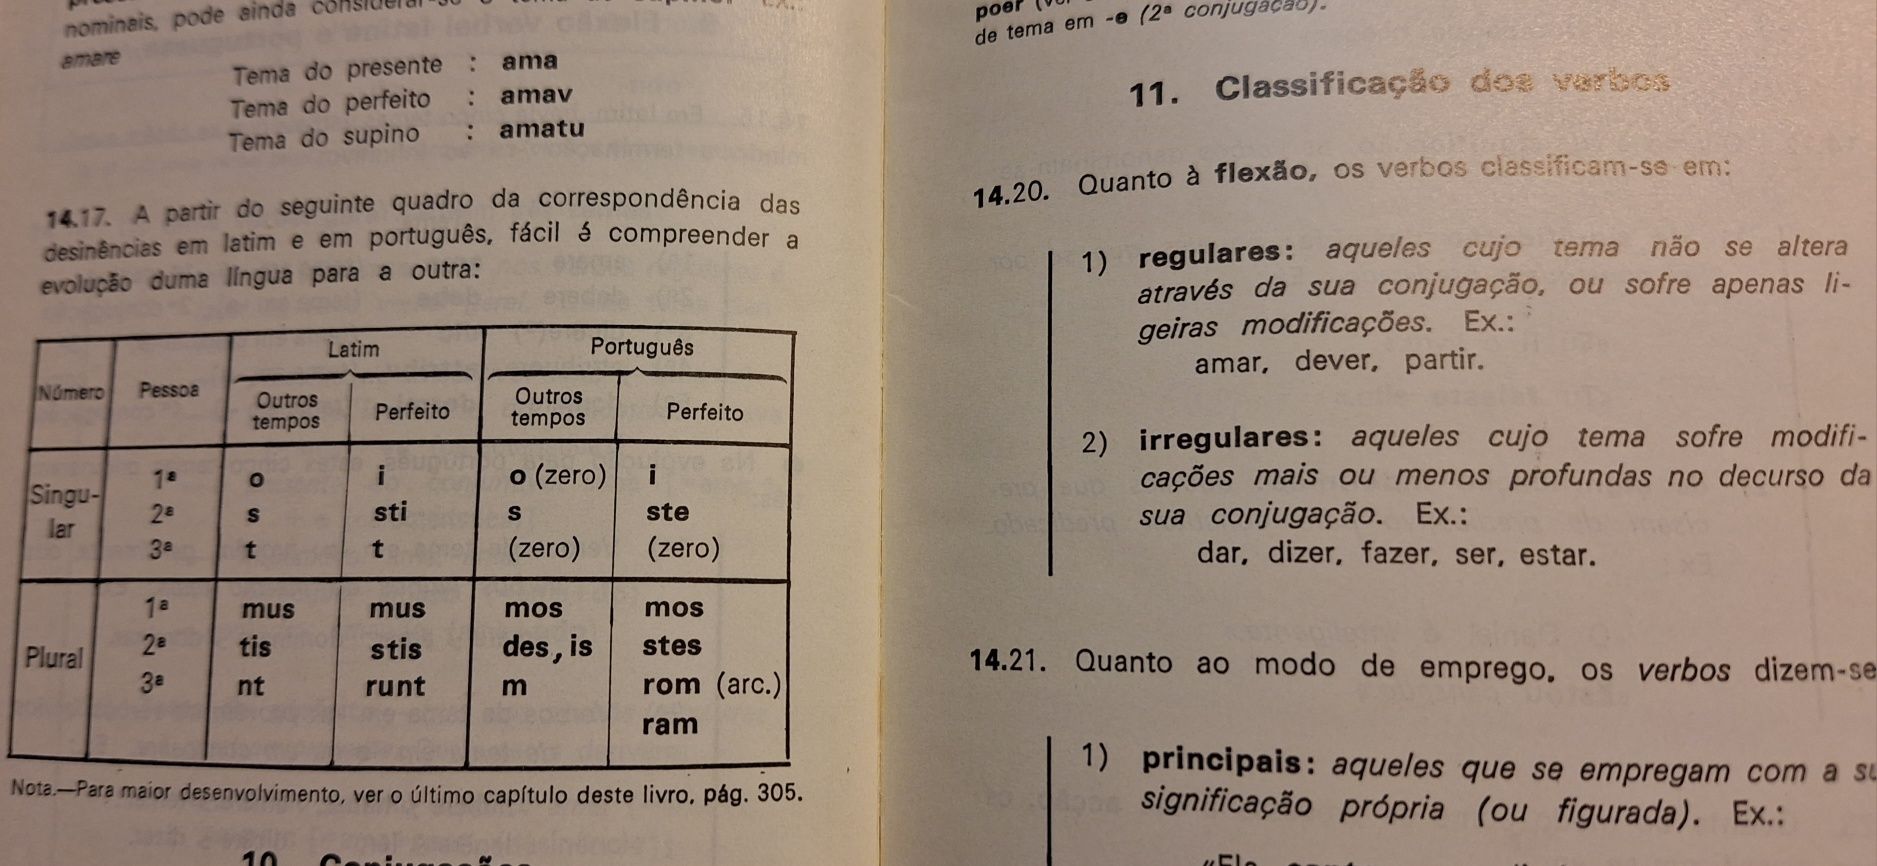 Manual escolar de português anos 70